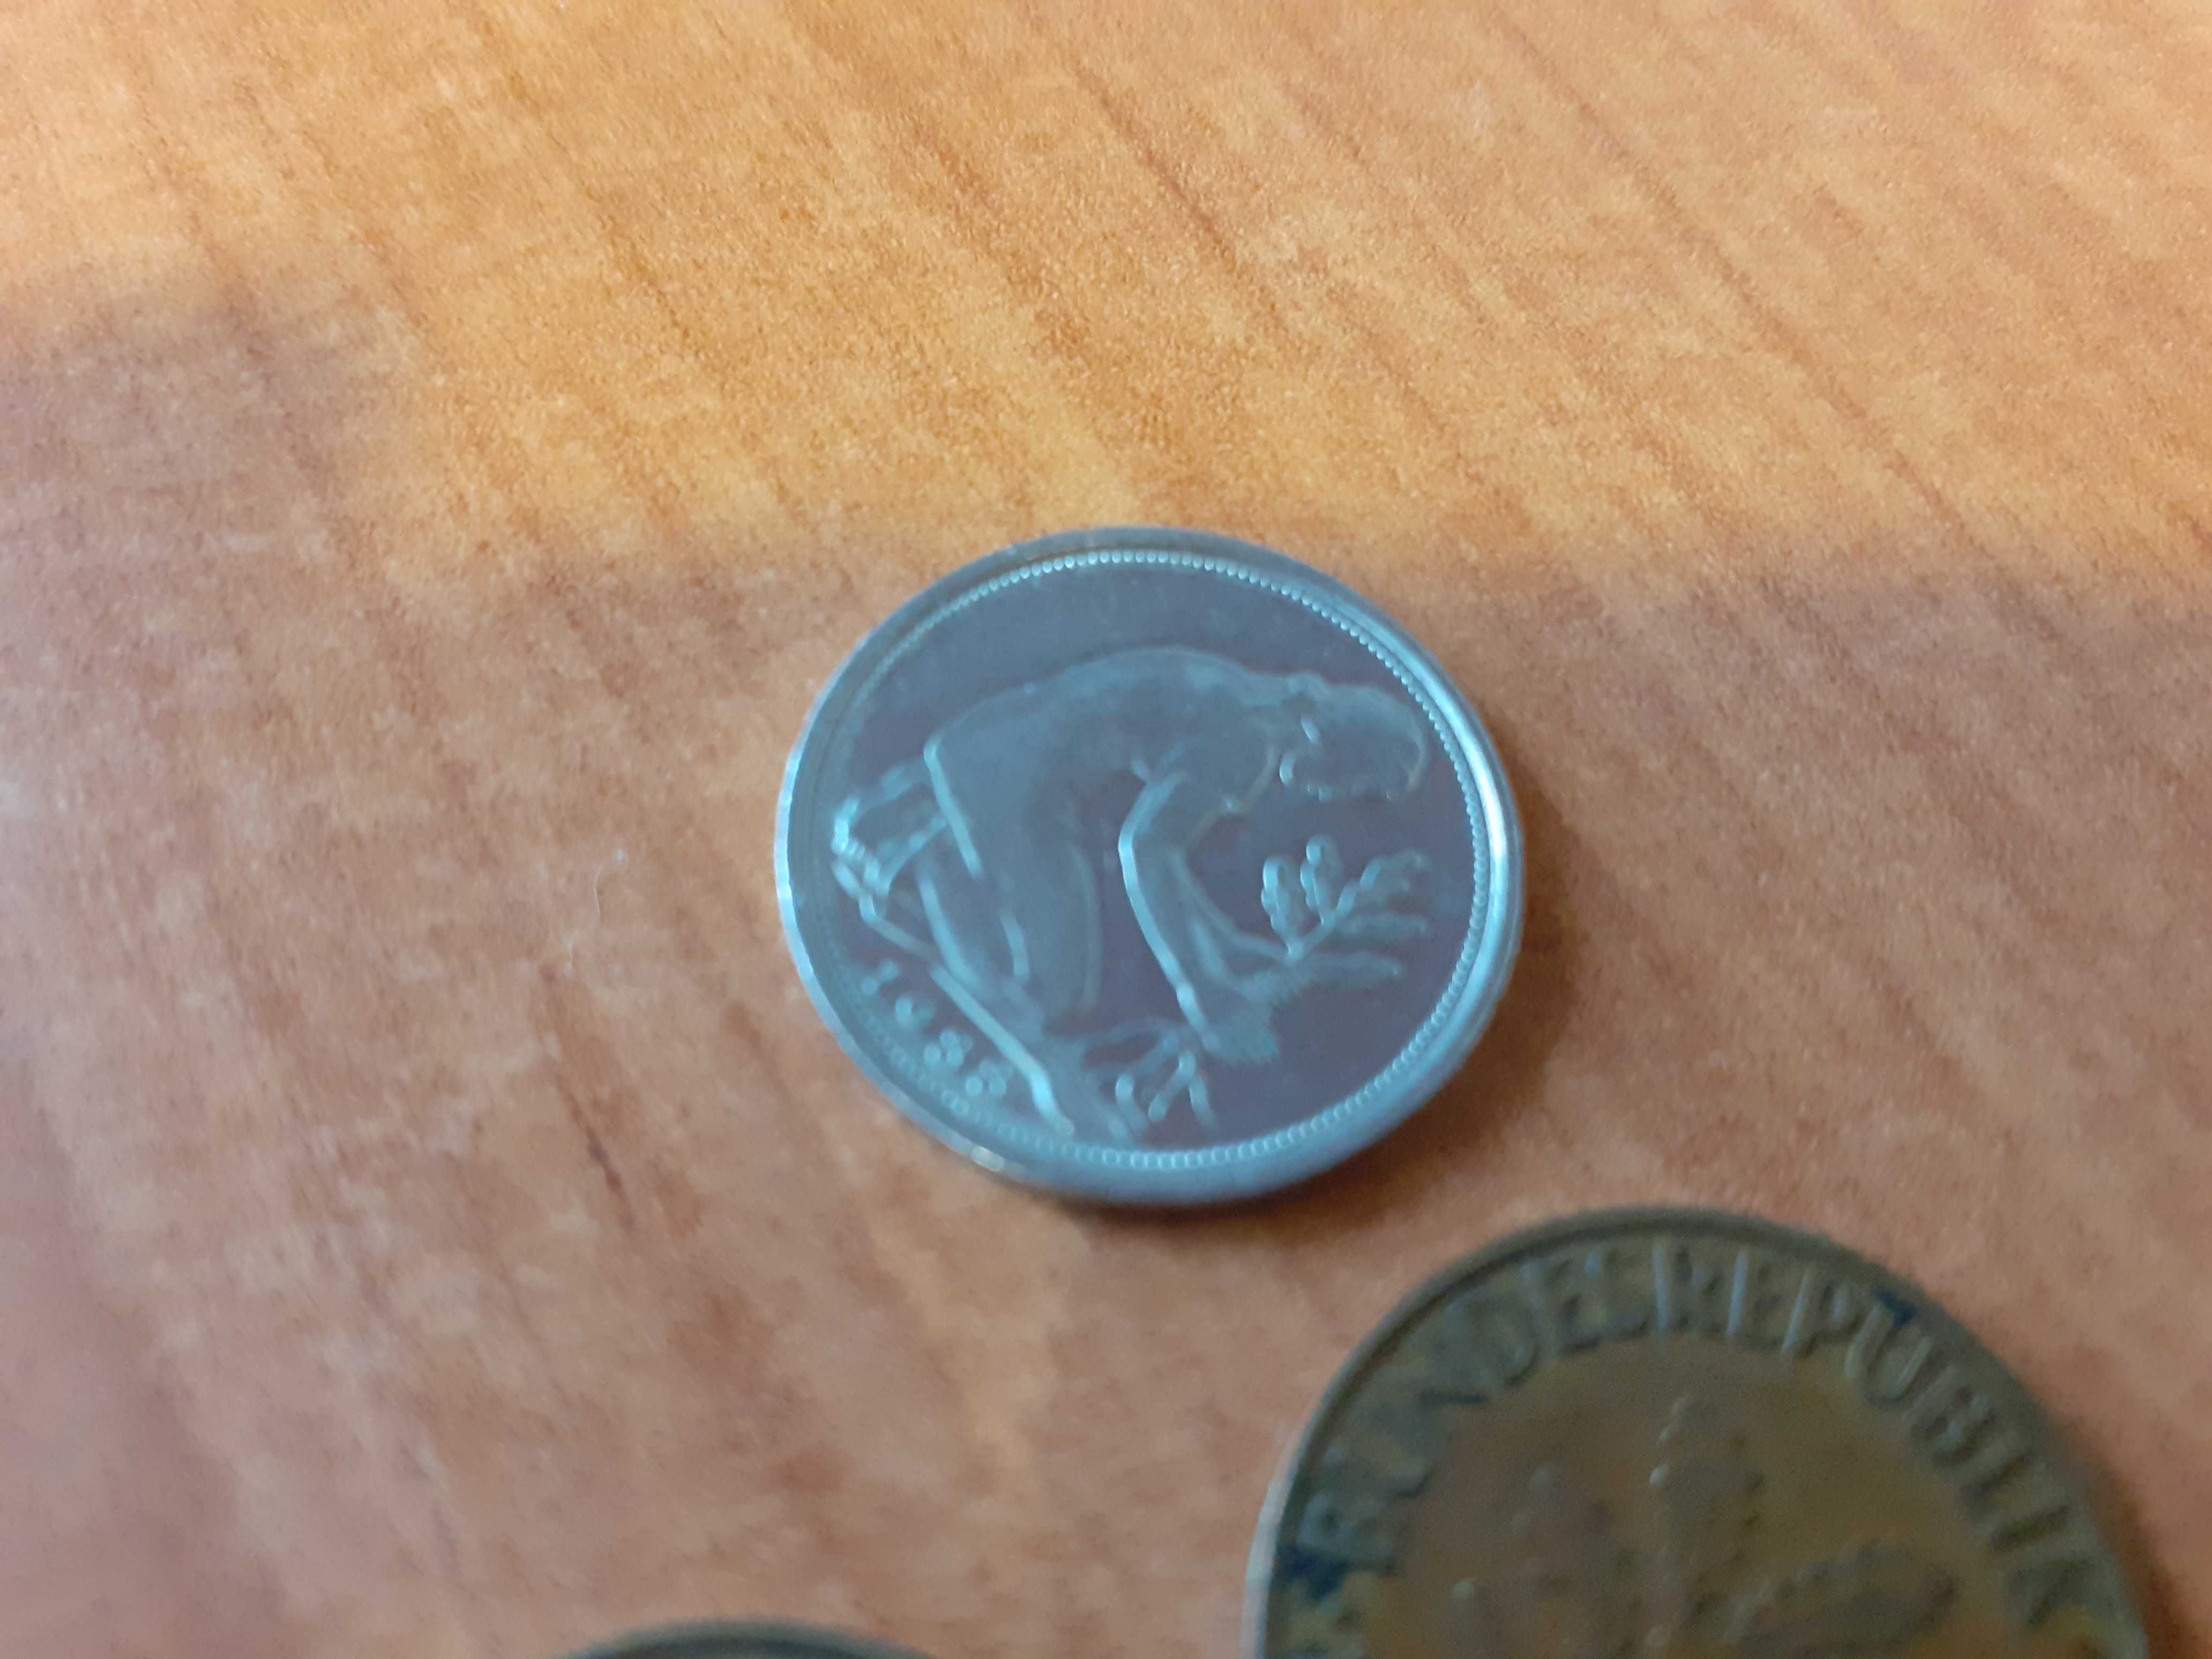 1 - 50 Pfennig Bundesrepublik Deutschland 1950 - 1993 PRL